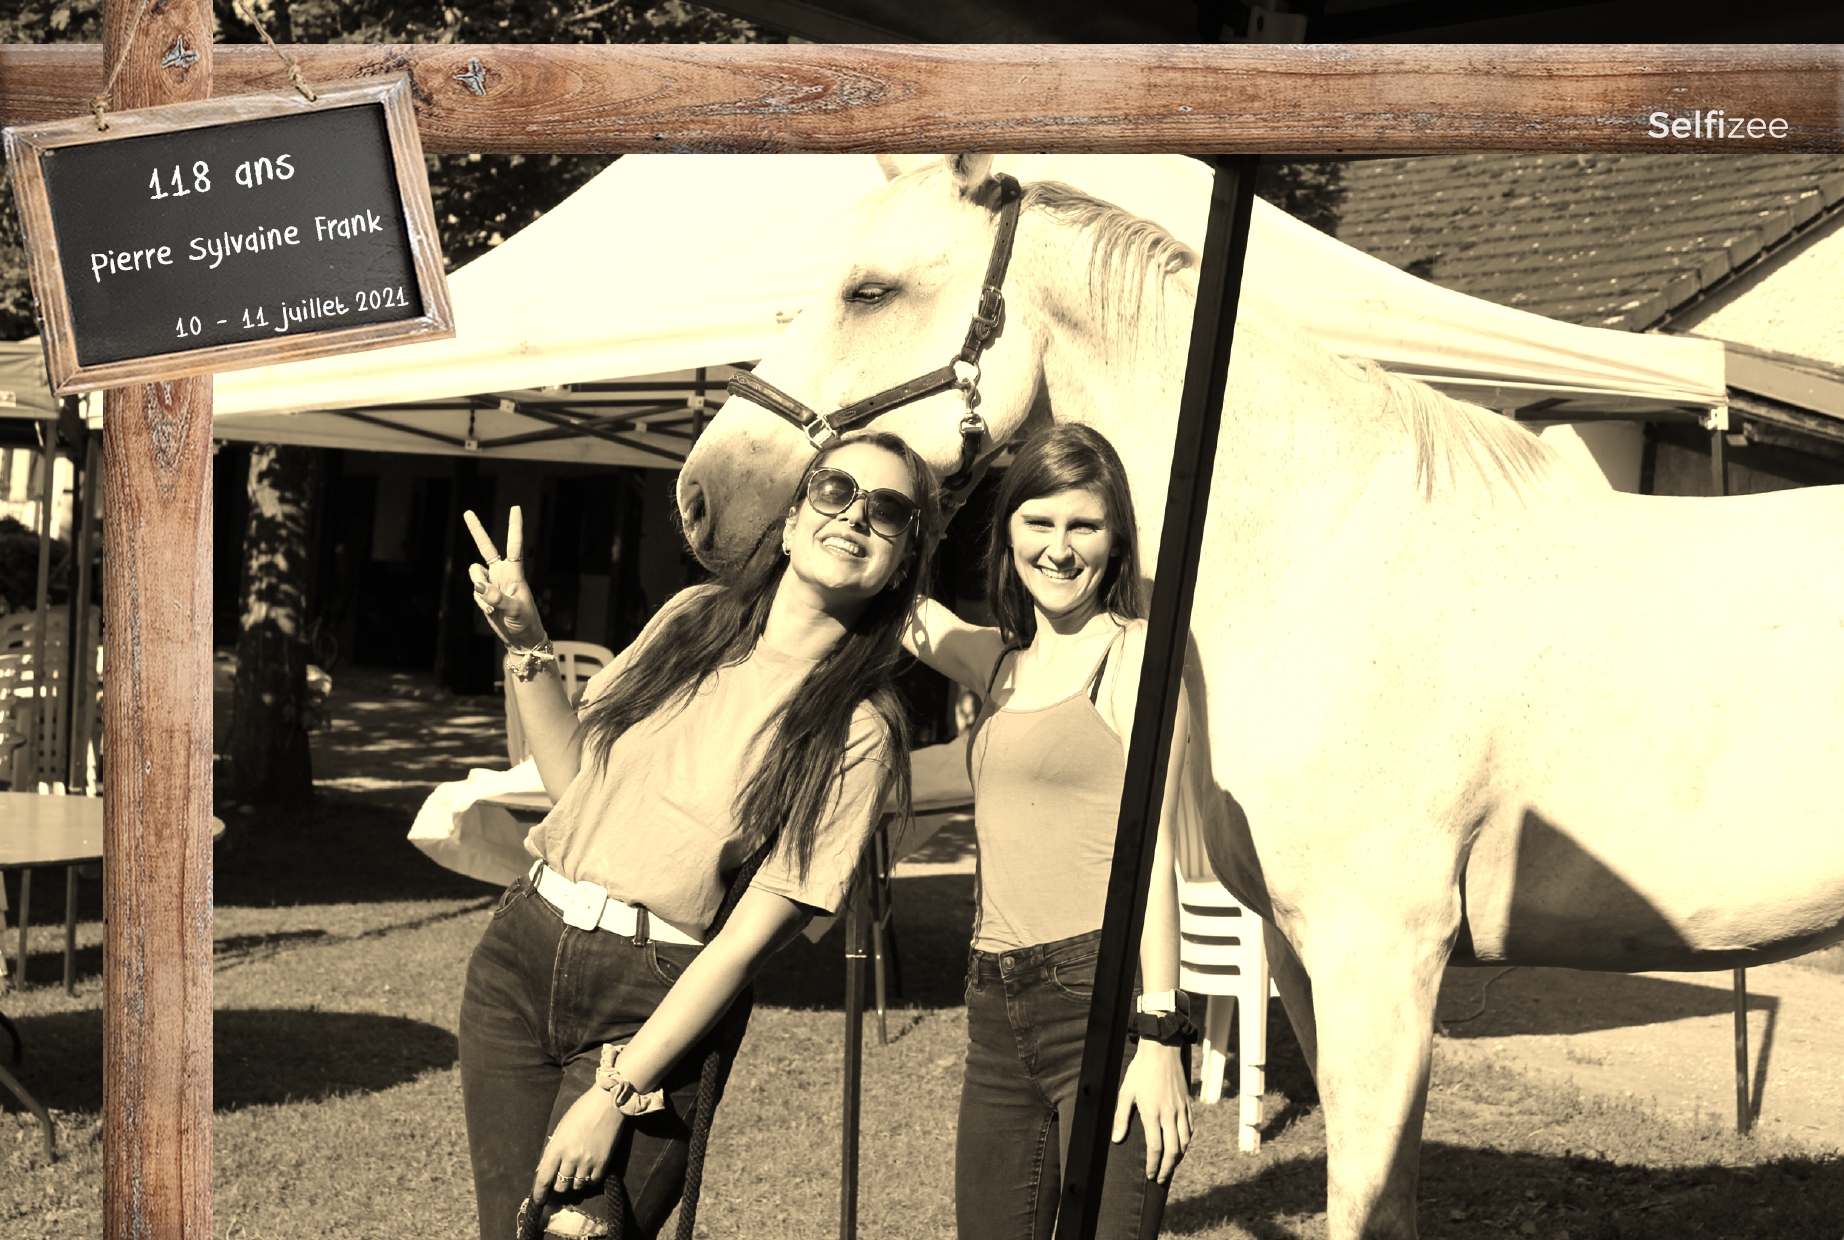 Evènement avec location photobooth en plein air, avec cheval